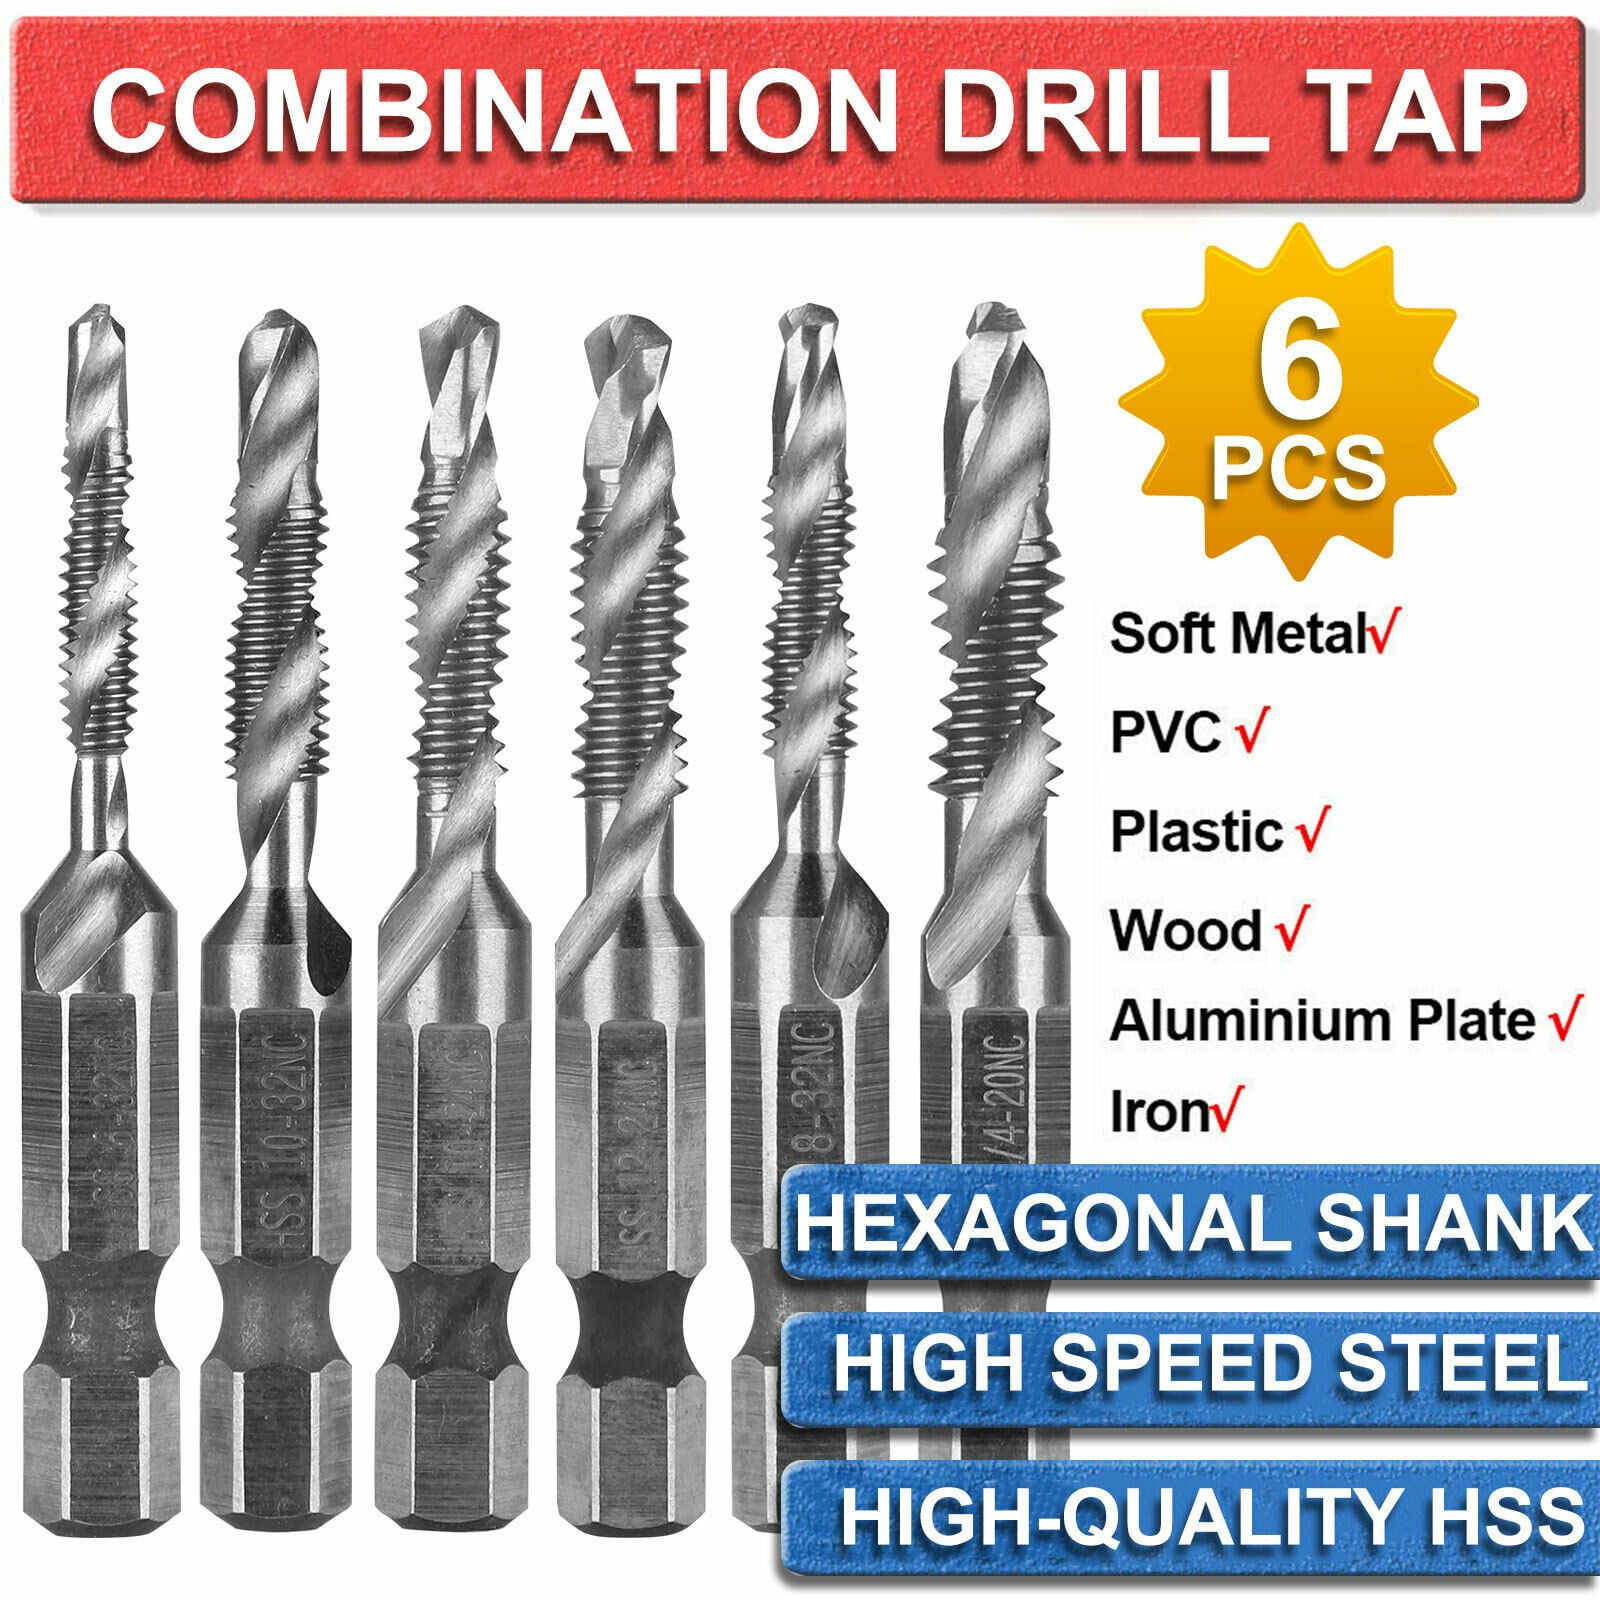 Spiral Flute Hss Combination Countersink Screw Tap Drill Bit Set 1/4" hex shank 